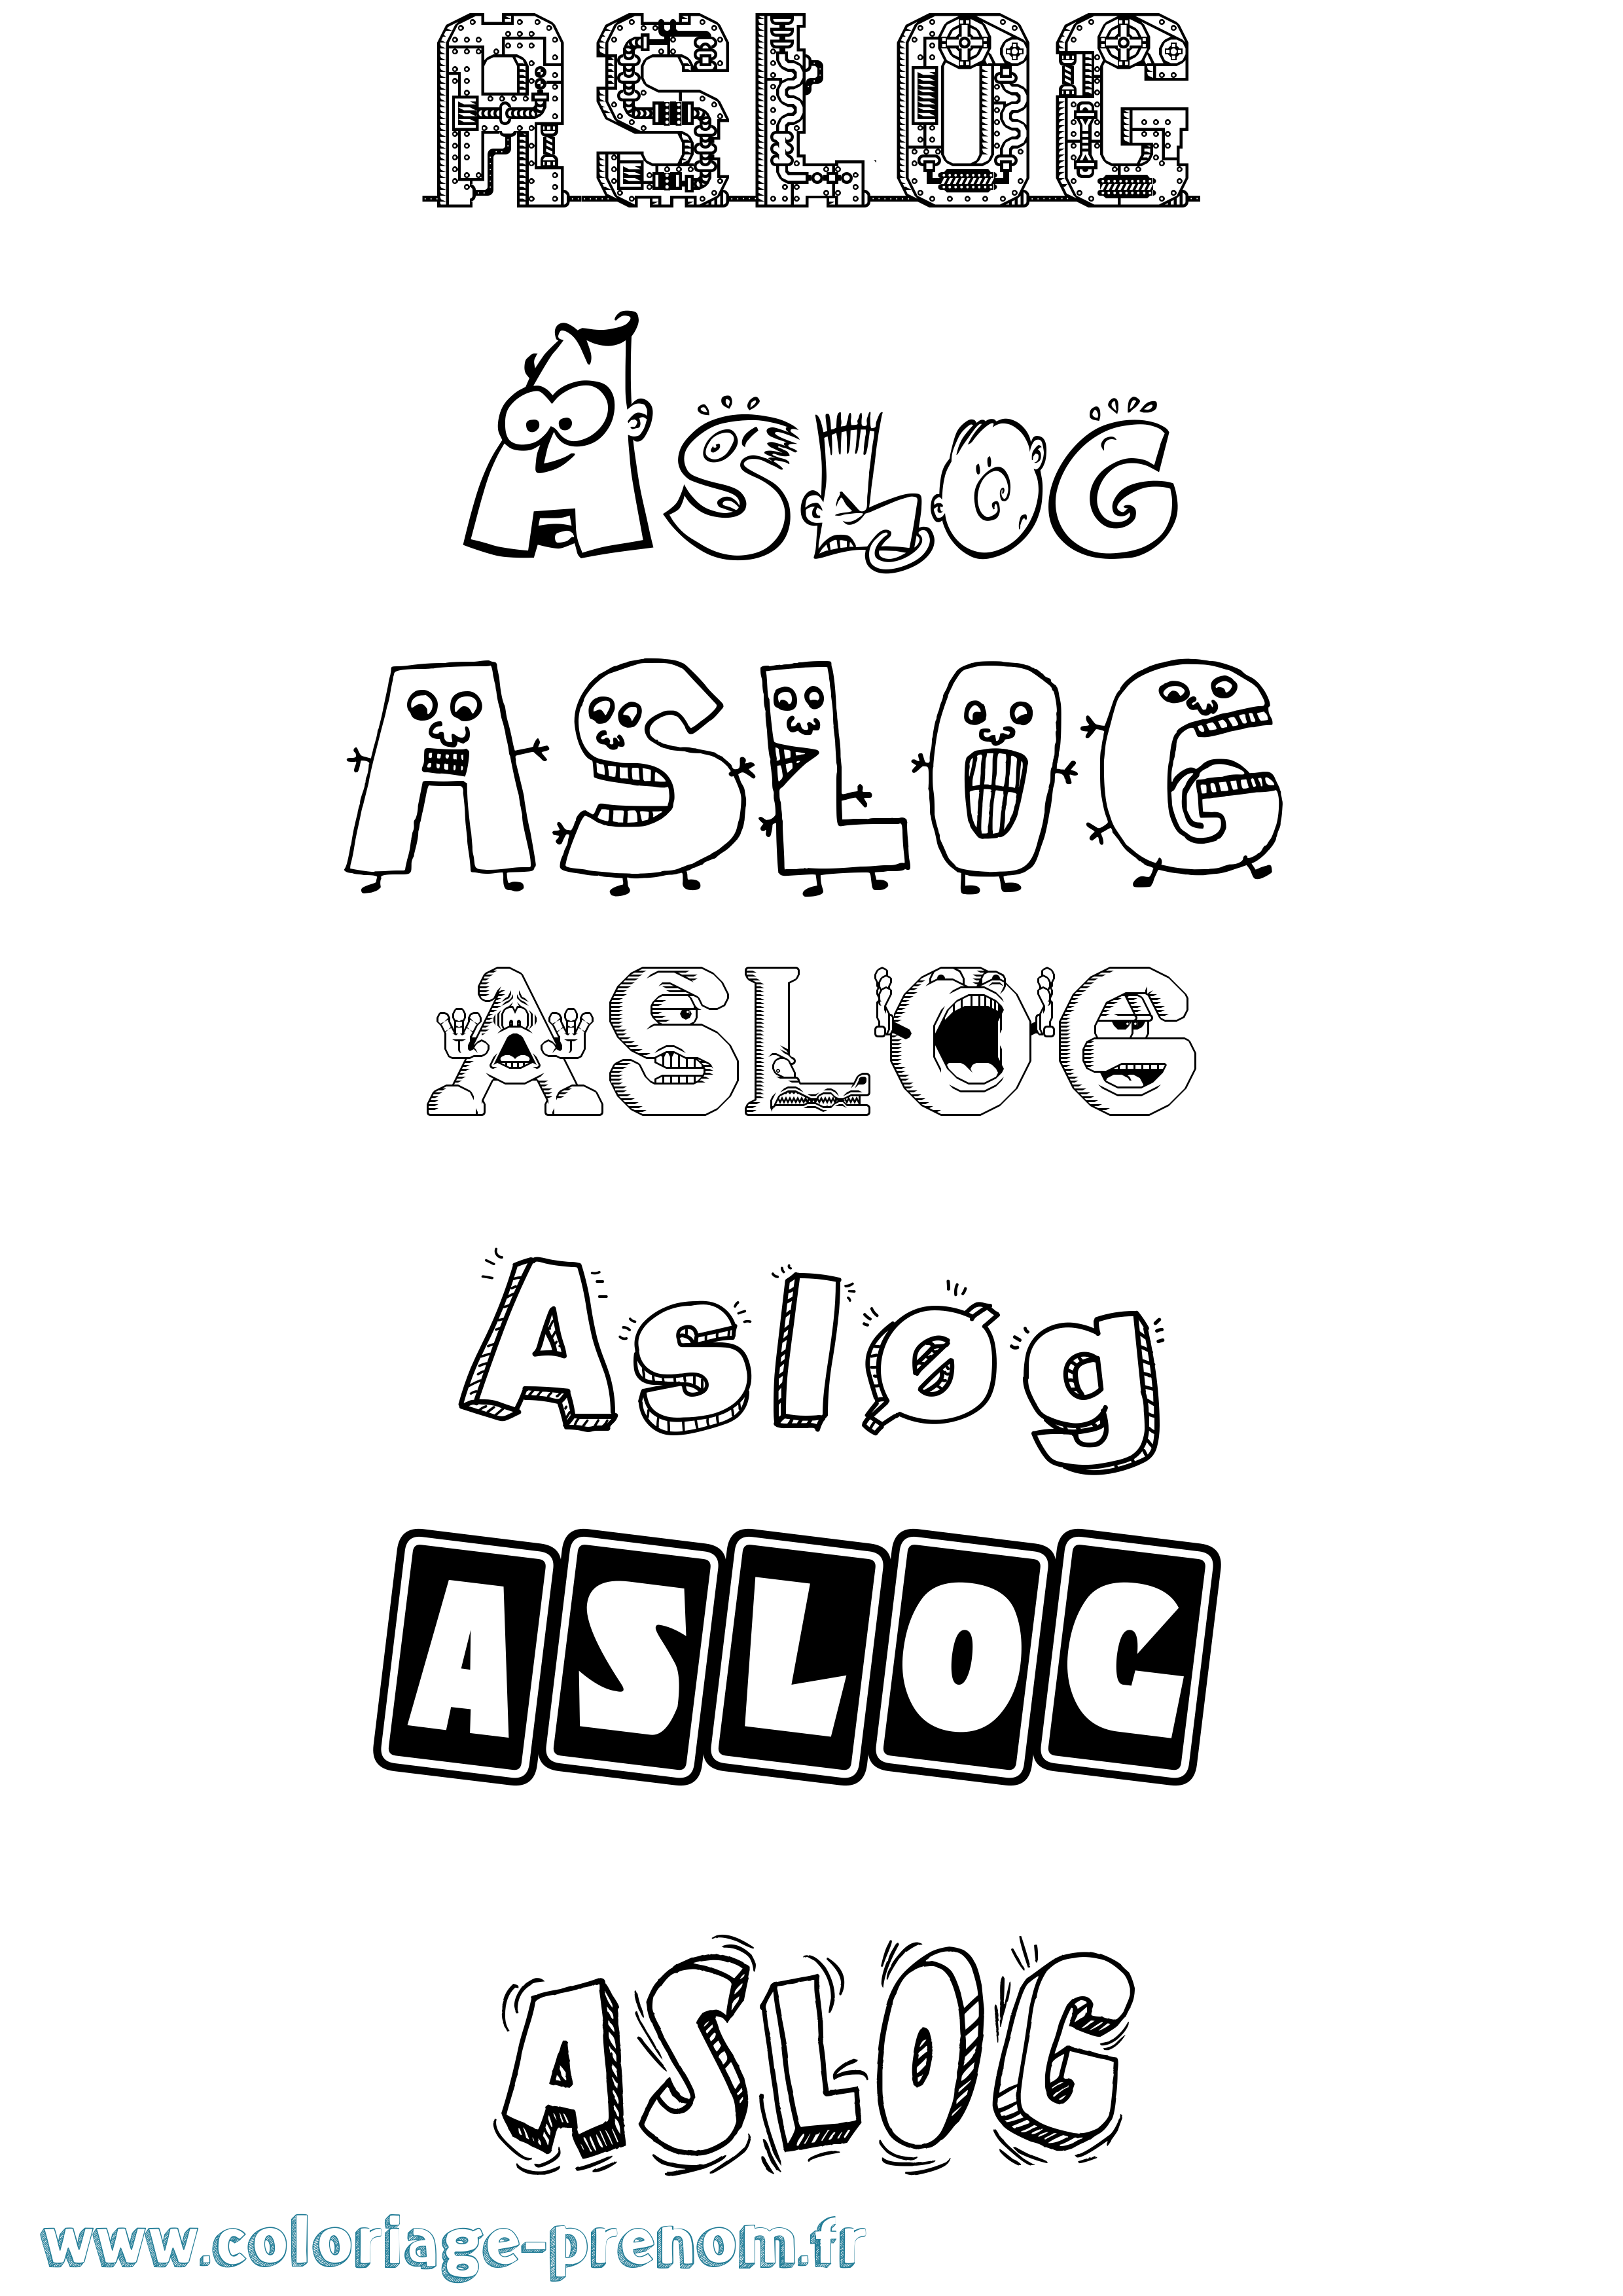 Coloriage prénom Asløg